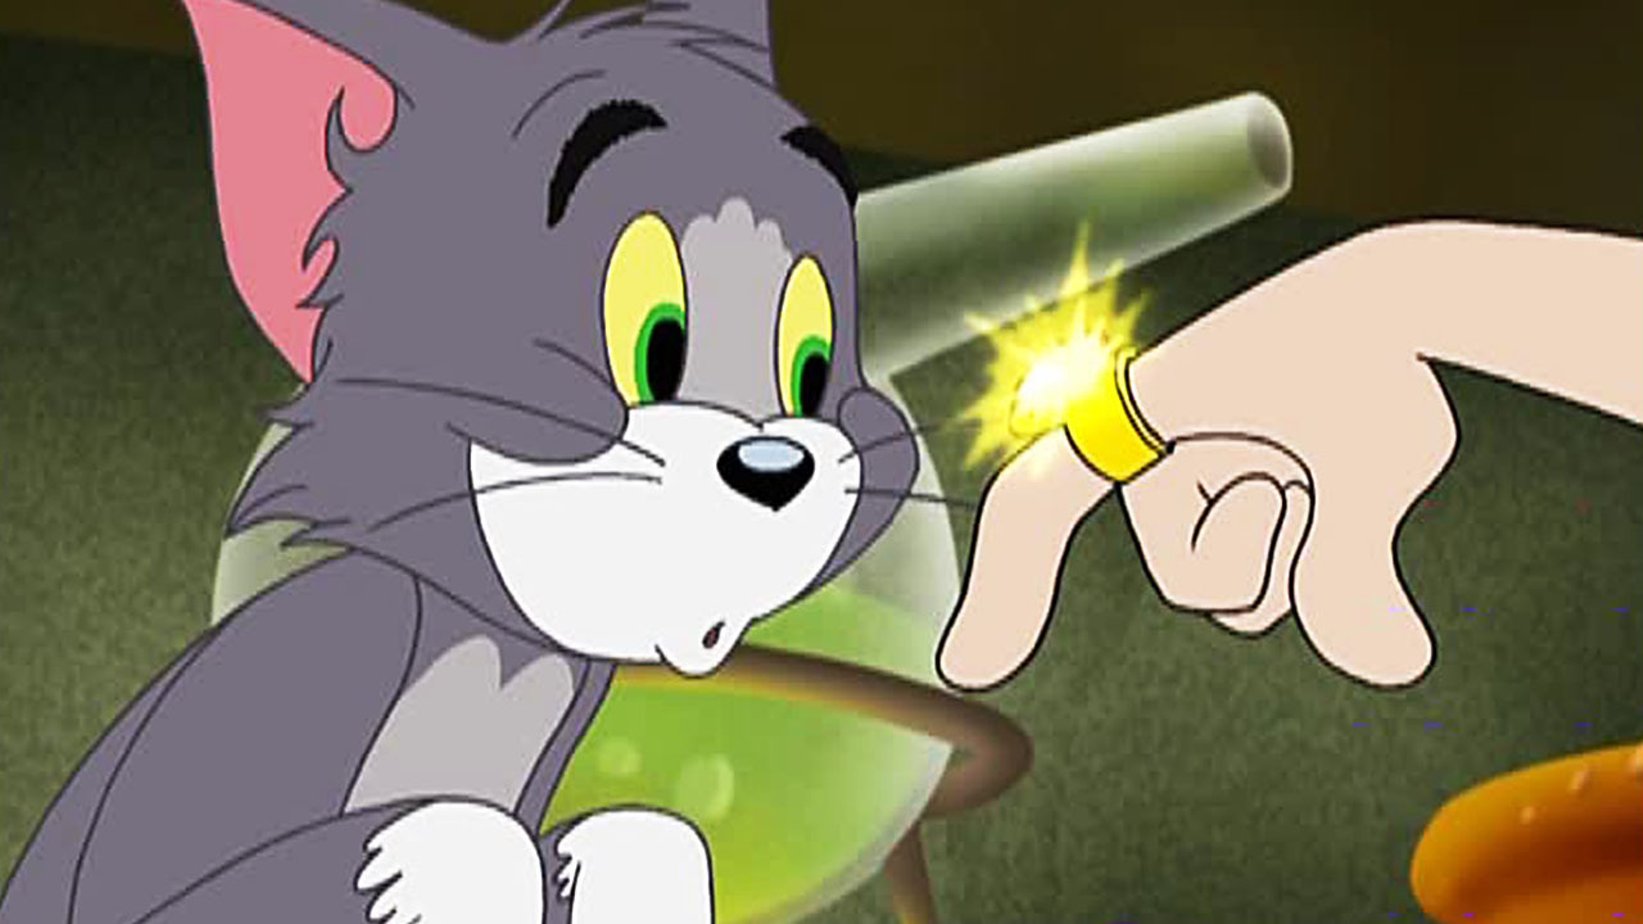 Tom n toms. Том и Джерри волшебное кольцо. Том и Джерри волшебное кольцо 2001. Том и Джерри 2002.